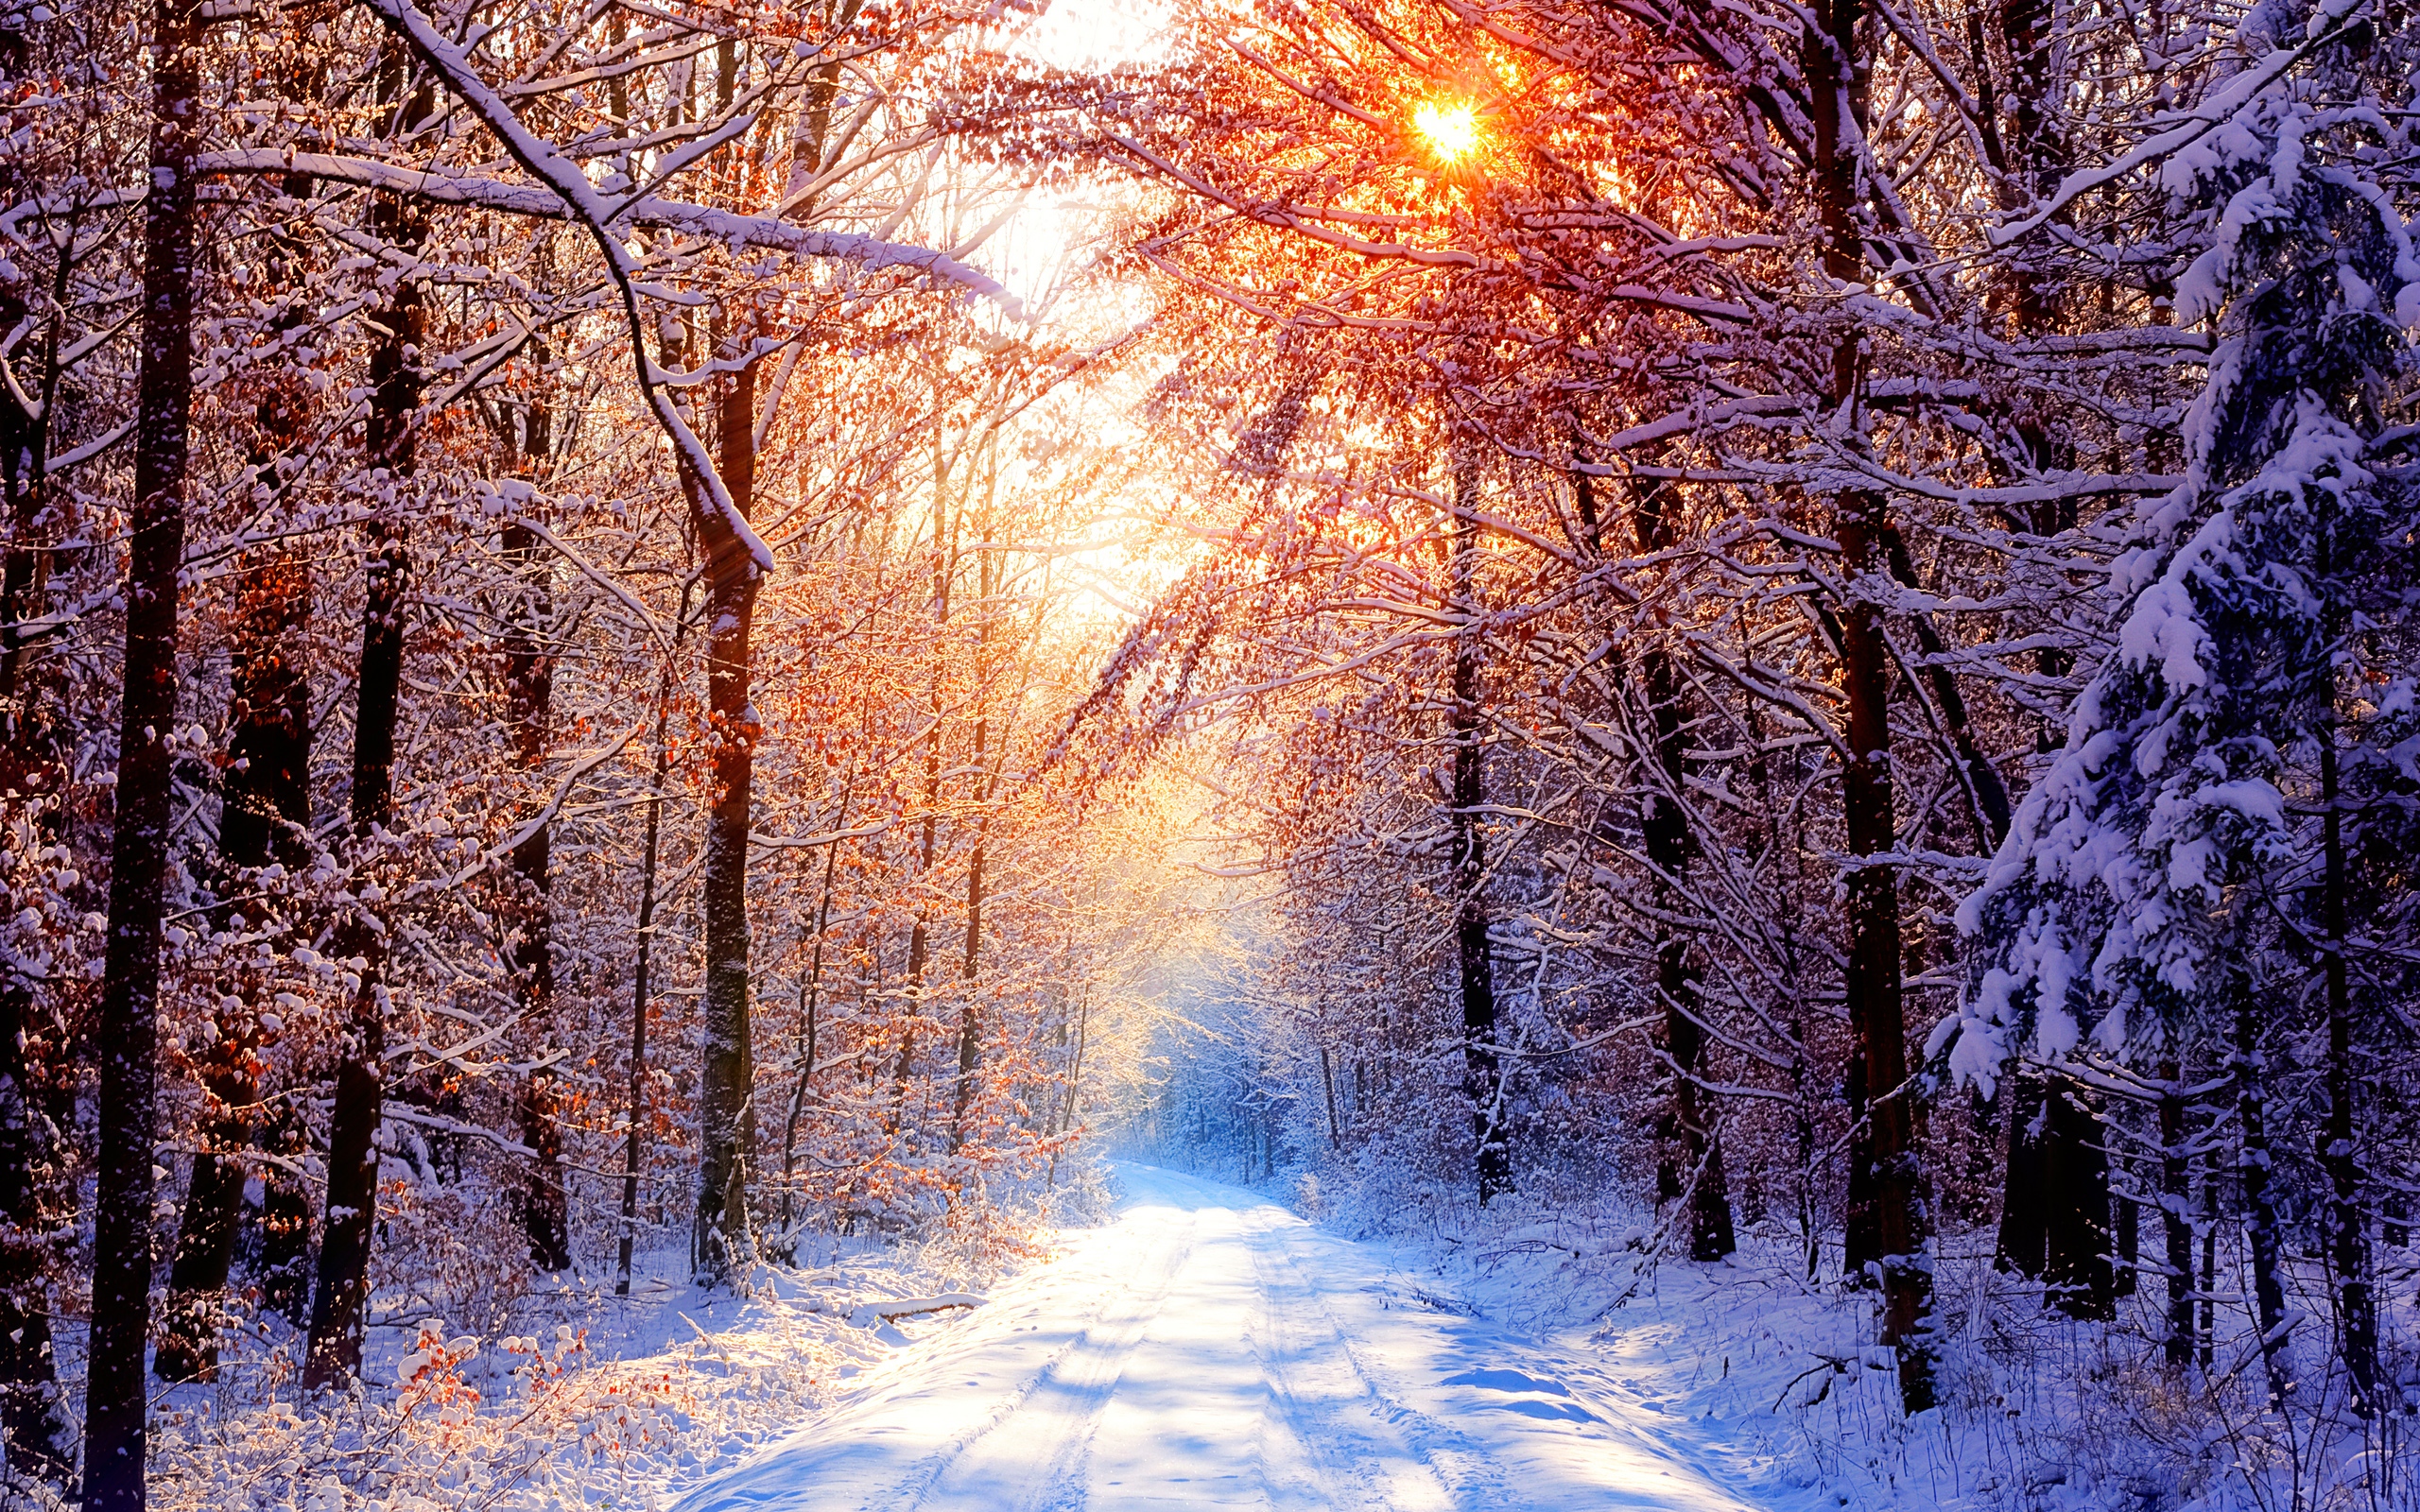 landscapes, winter, snow, forests - desktop wallpaper